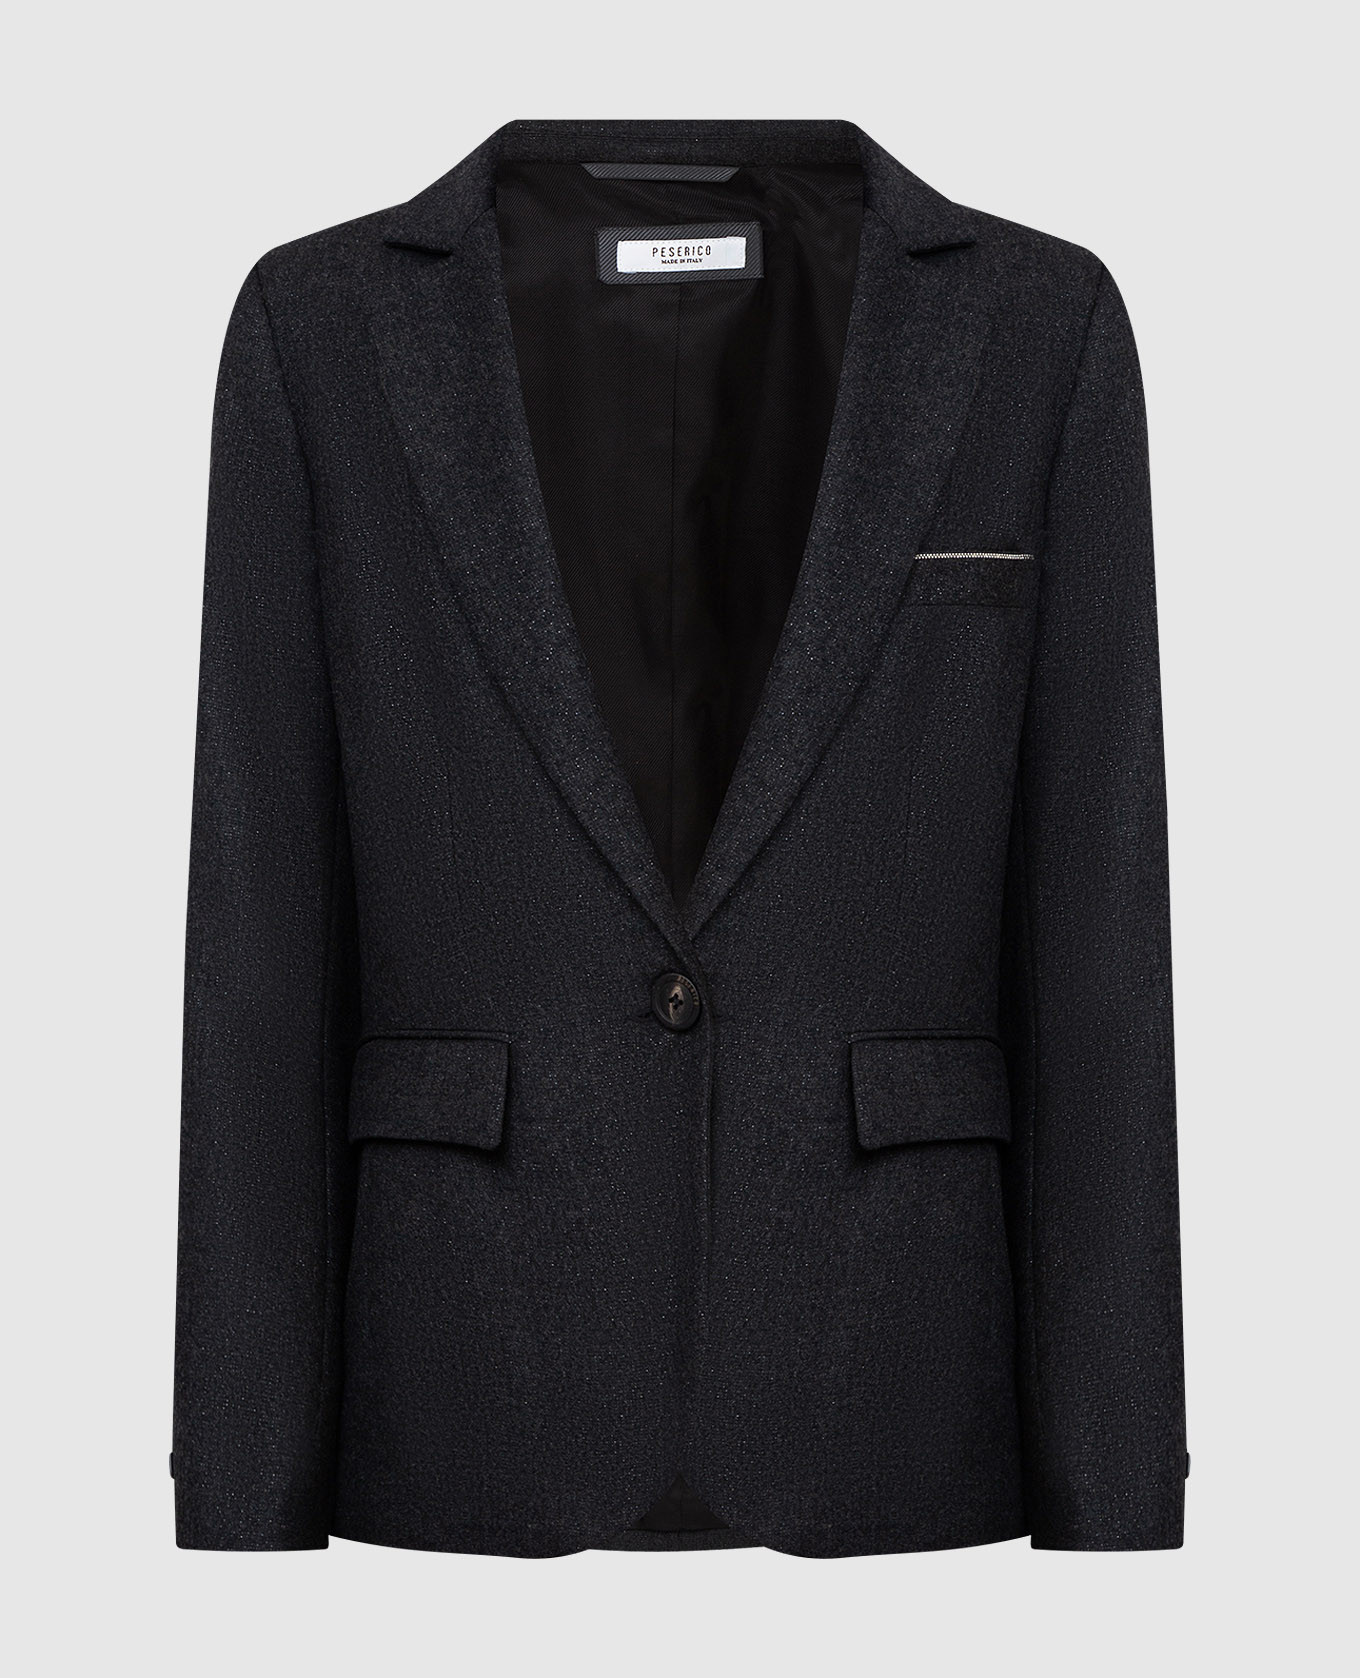 Dark gray wool jacket with lurex thread